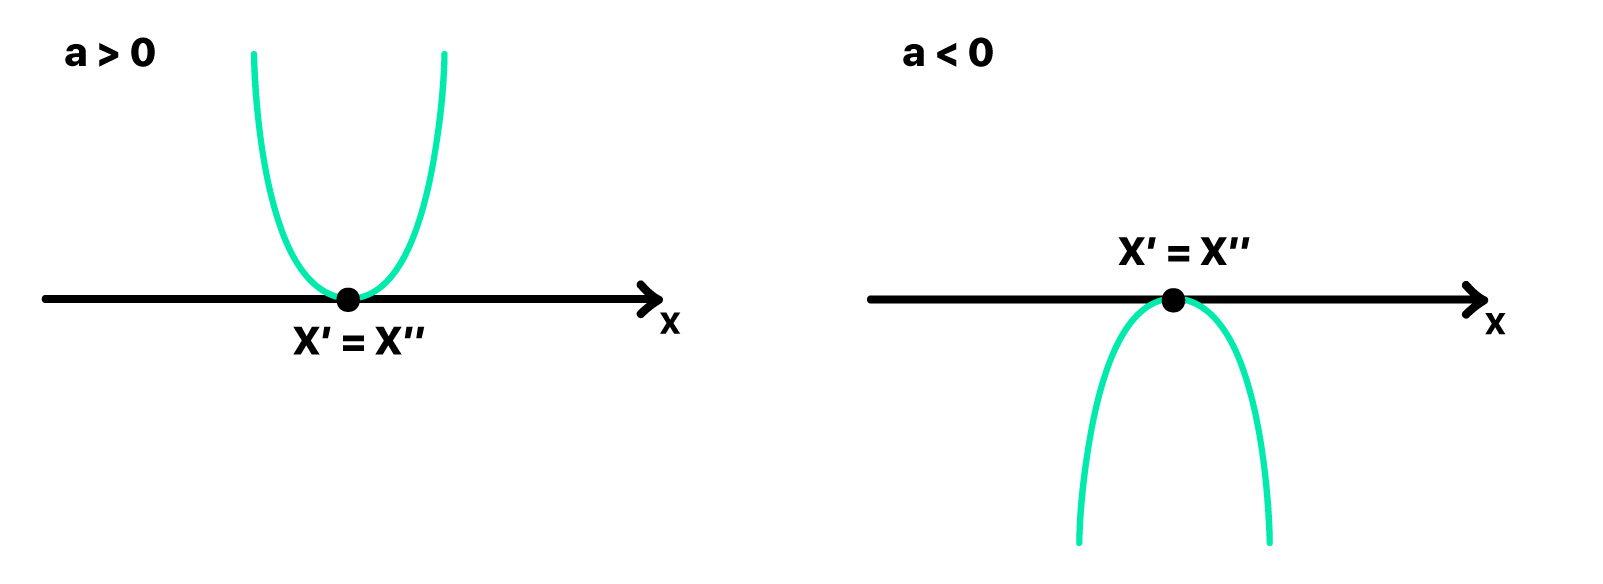 parábola que corta o eixo x em um único ponto x' = x" quando a concavidade é voltada para cima e para baixo